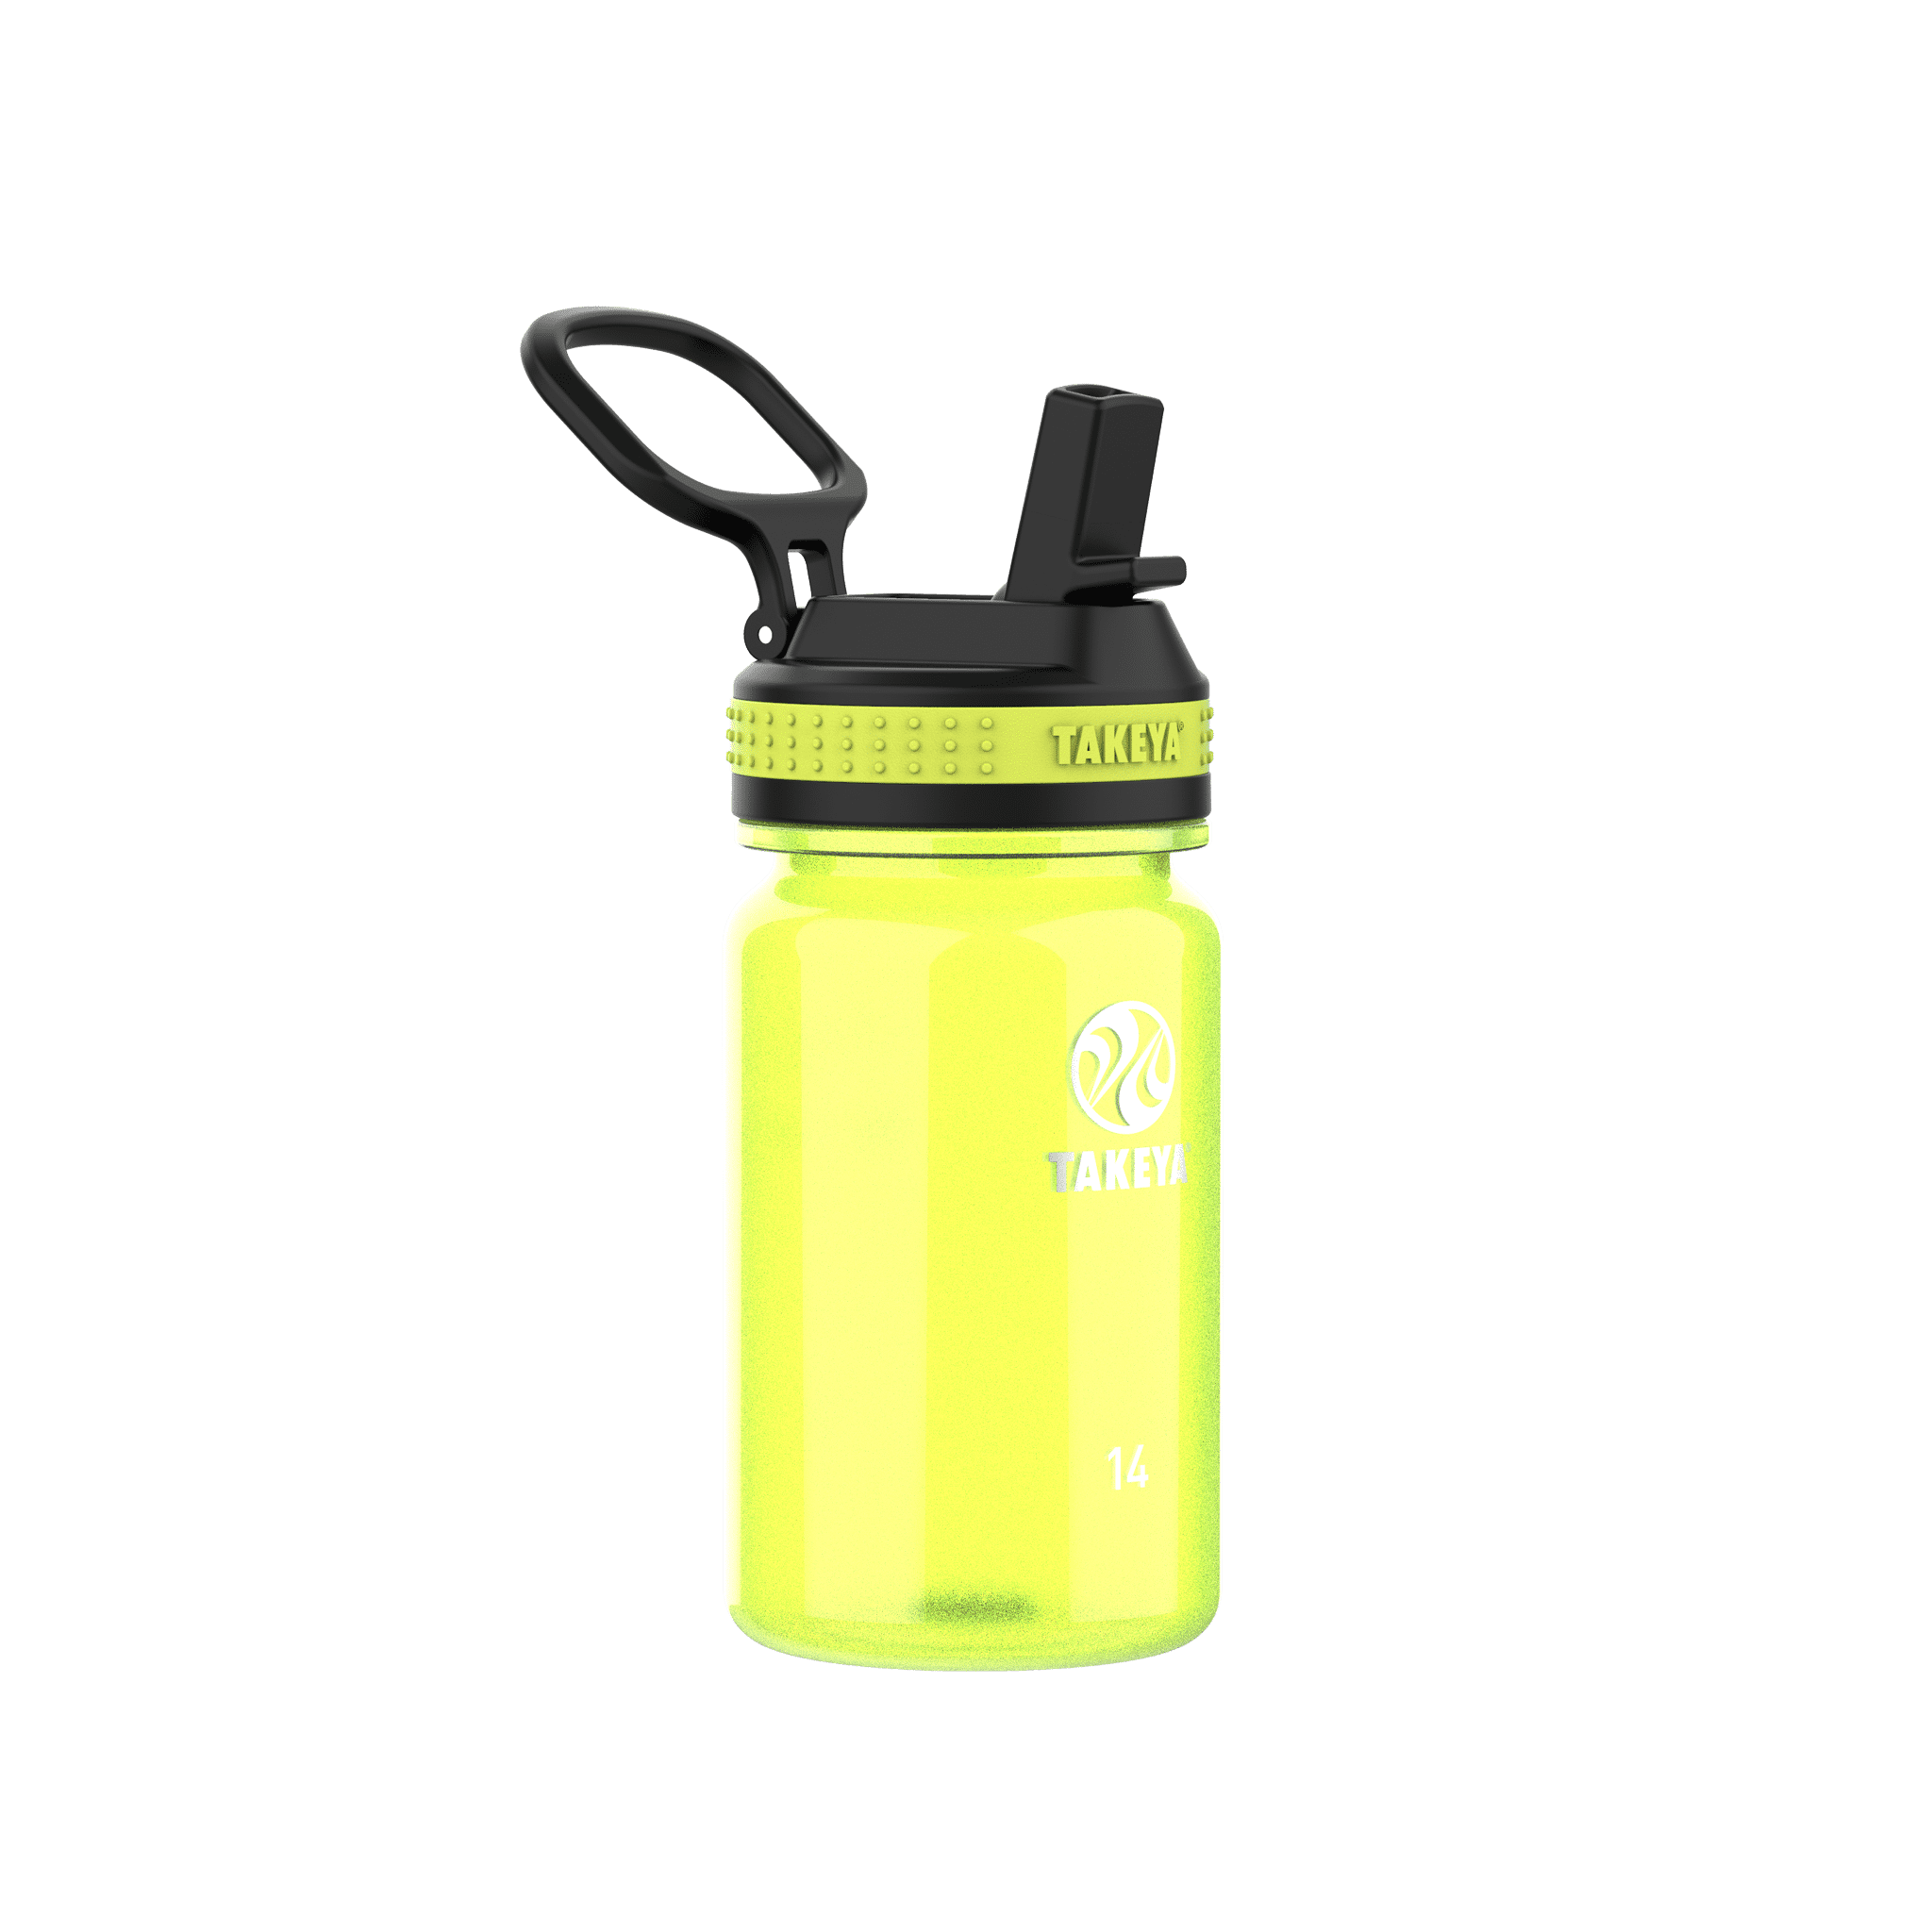 18 oz Tritan Water Bottle with Spout Lid Two Pack – Takeya USA